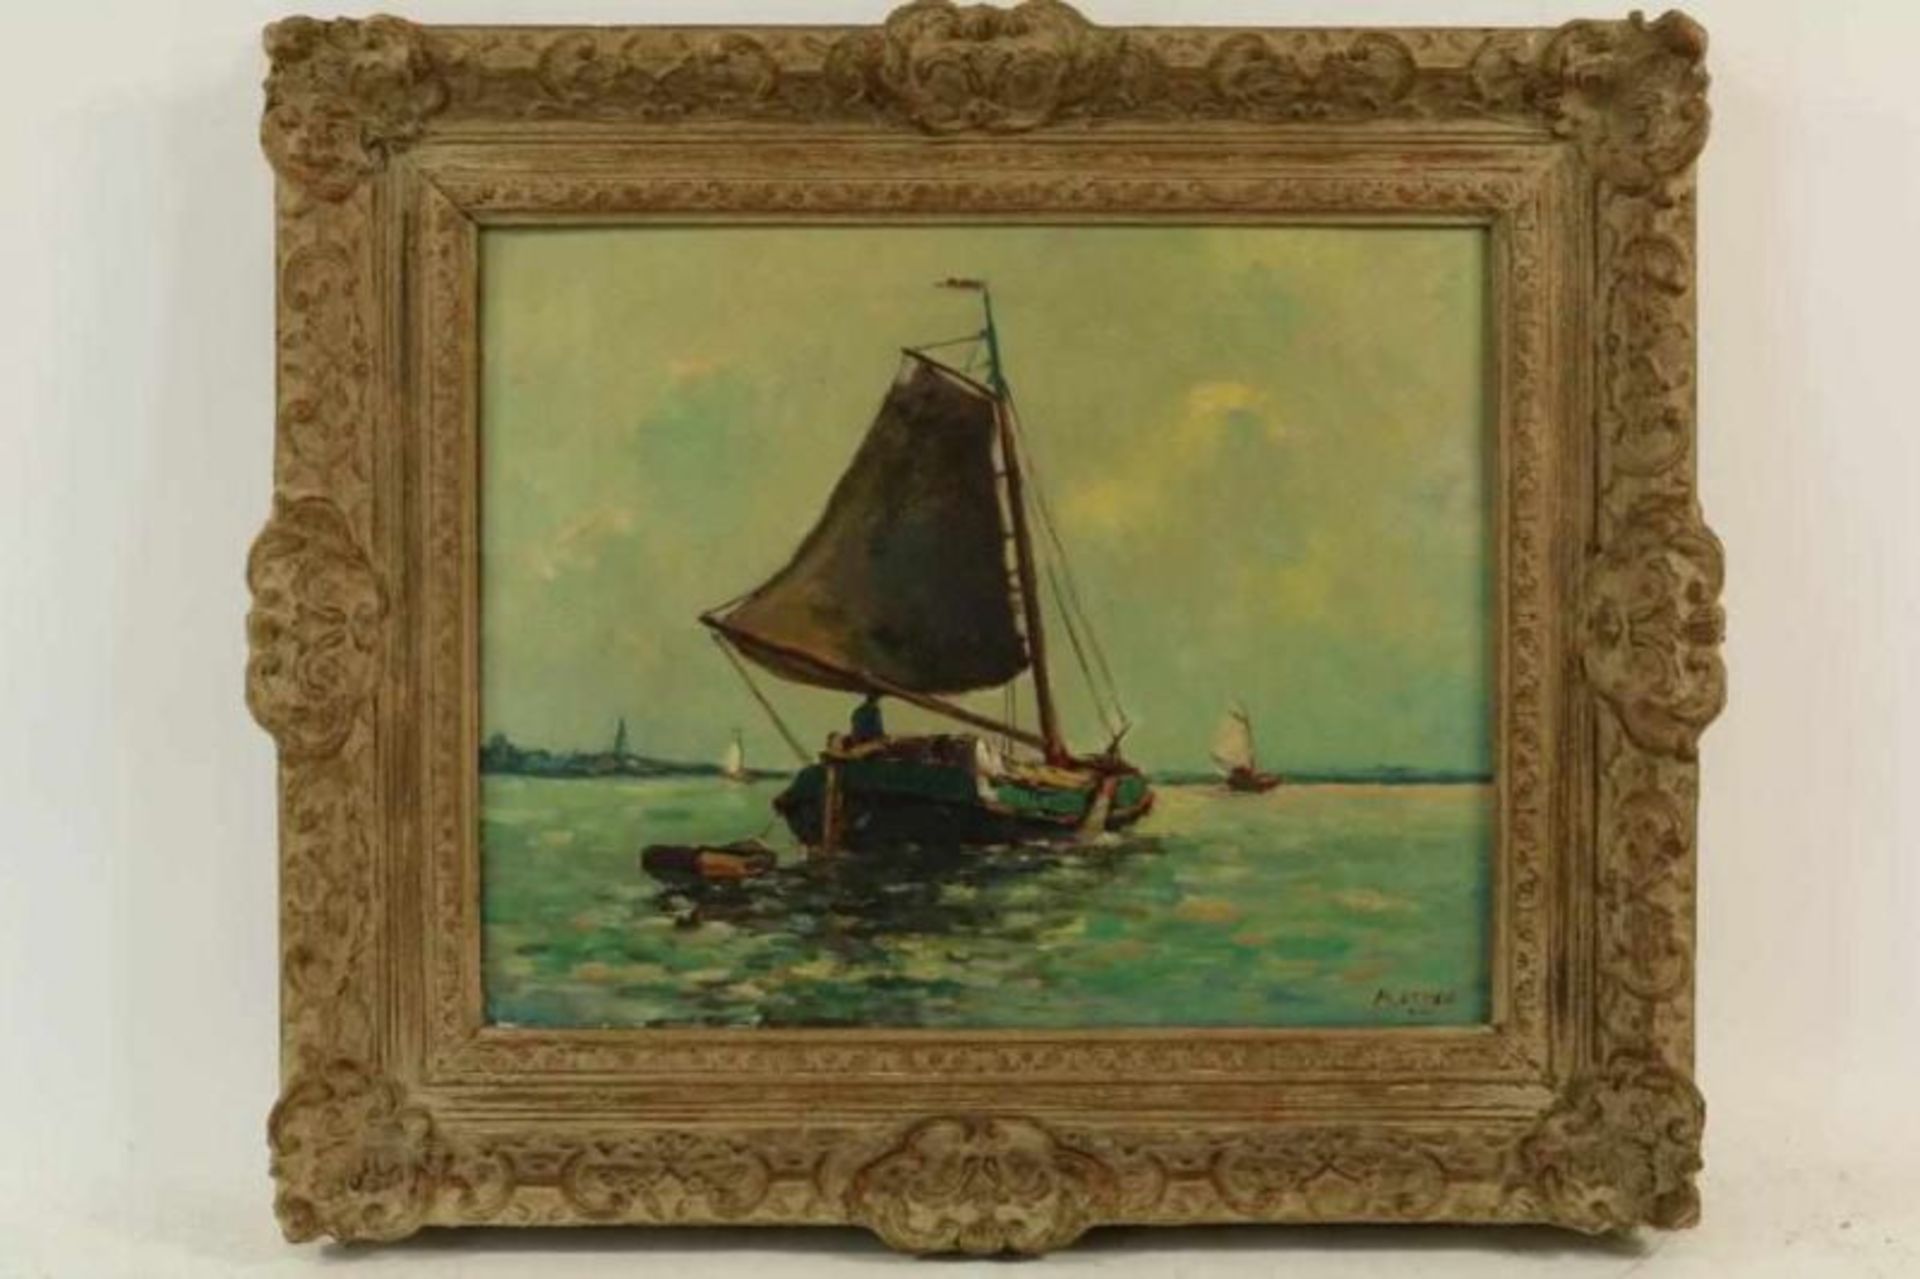 OTTEE MARK (189801982), ges. r.o. zeilboot, doek 38 x 48 cm. - Bild 2 aus 4